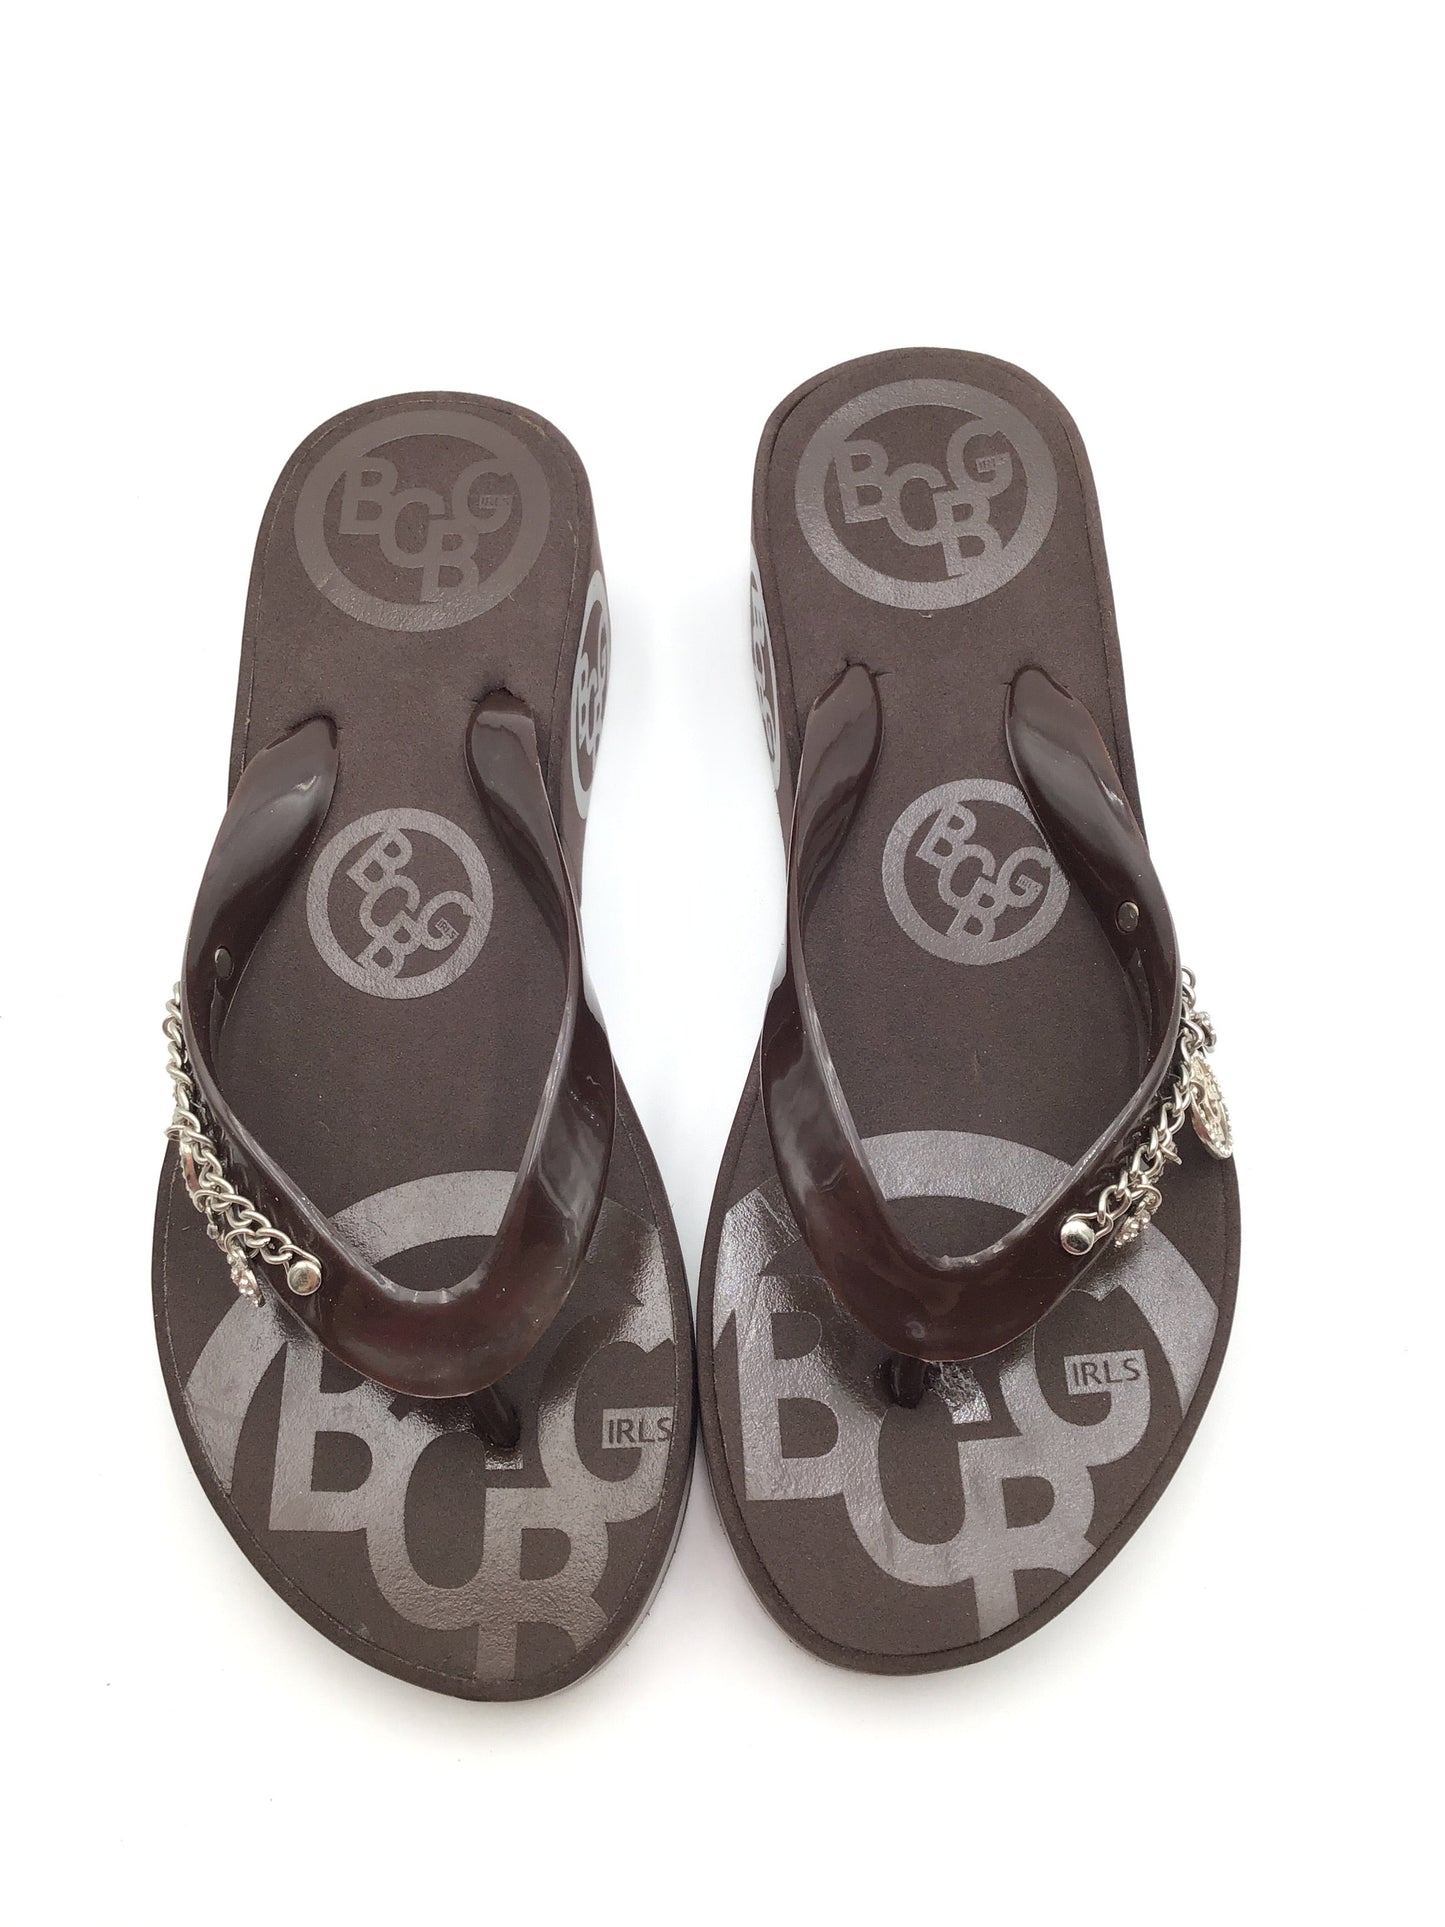 Brown & Silver Sandals Heels Platform Bcbg, Size 7